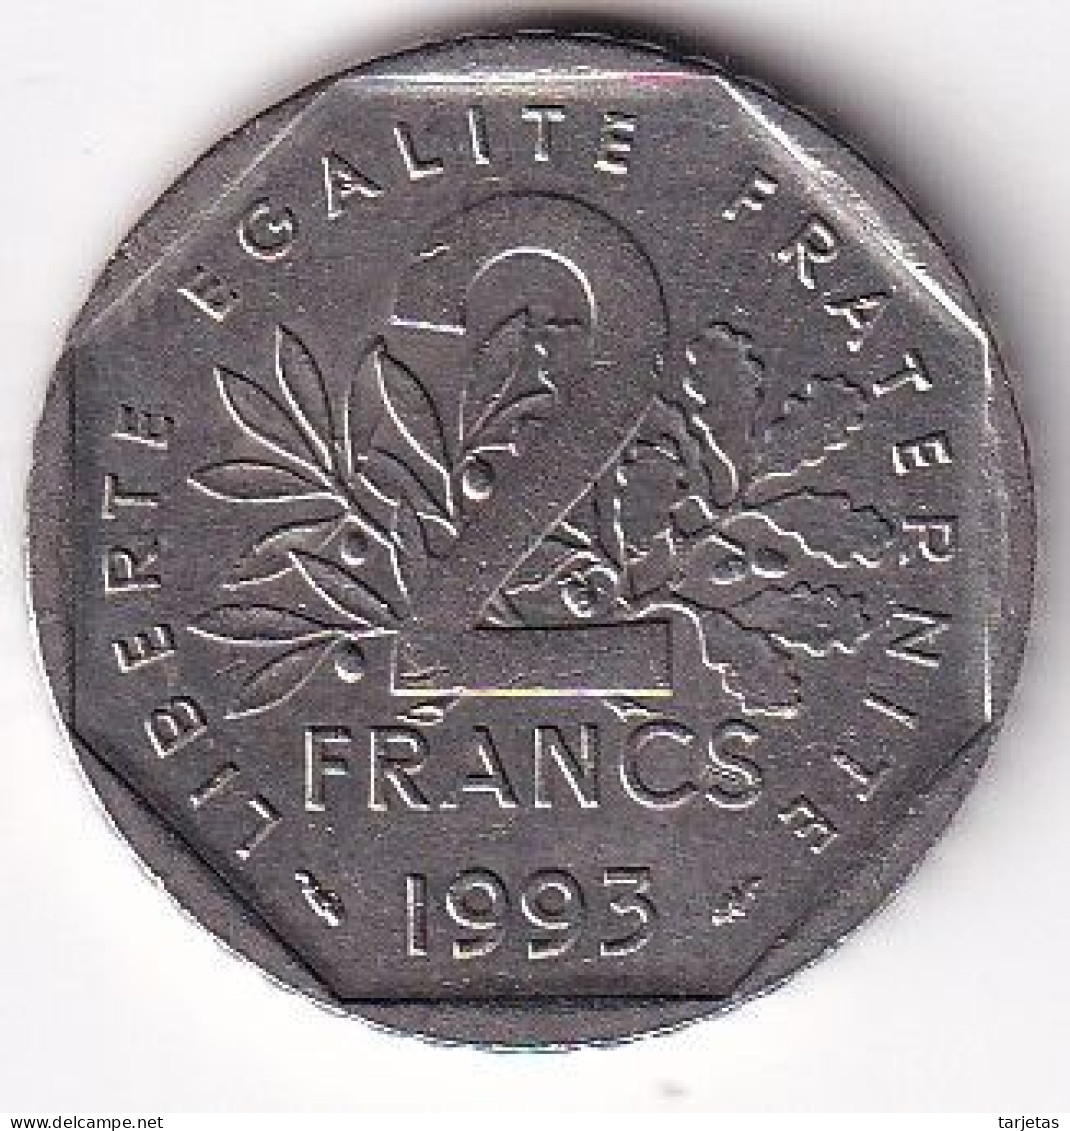 MONEDA DE FRANCIA DE 2 FRANCS DEL AÑO 1993 (COIN) - 2 Francs